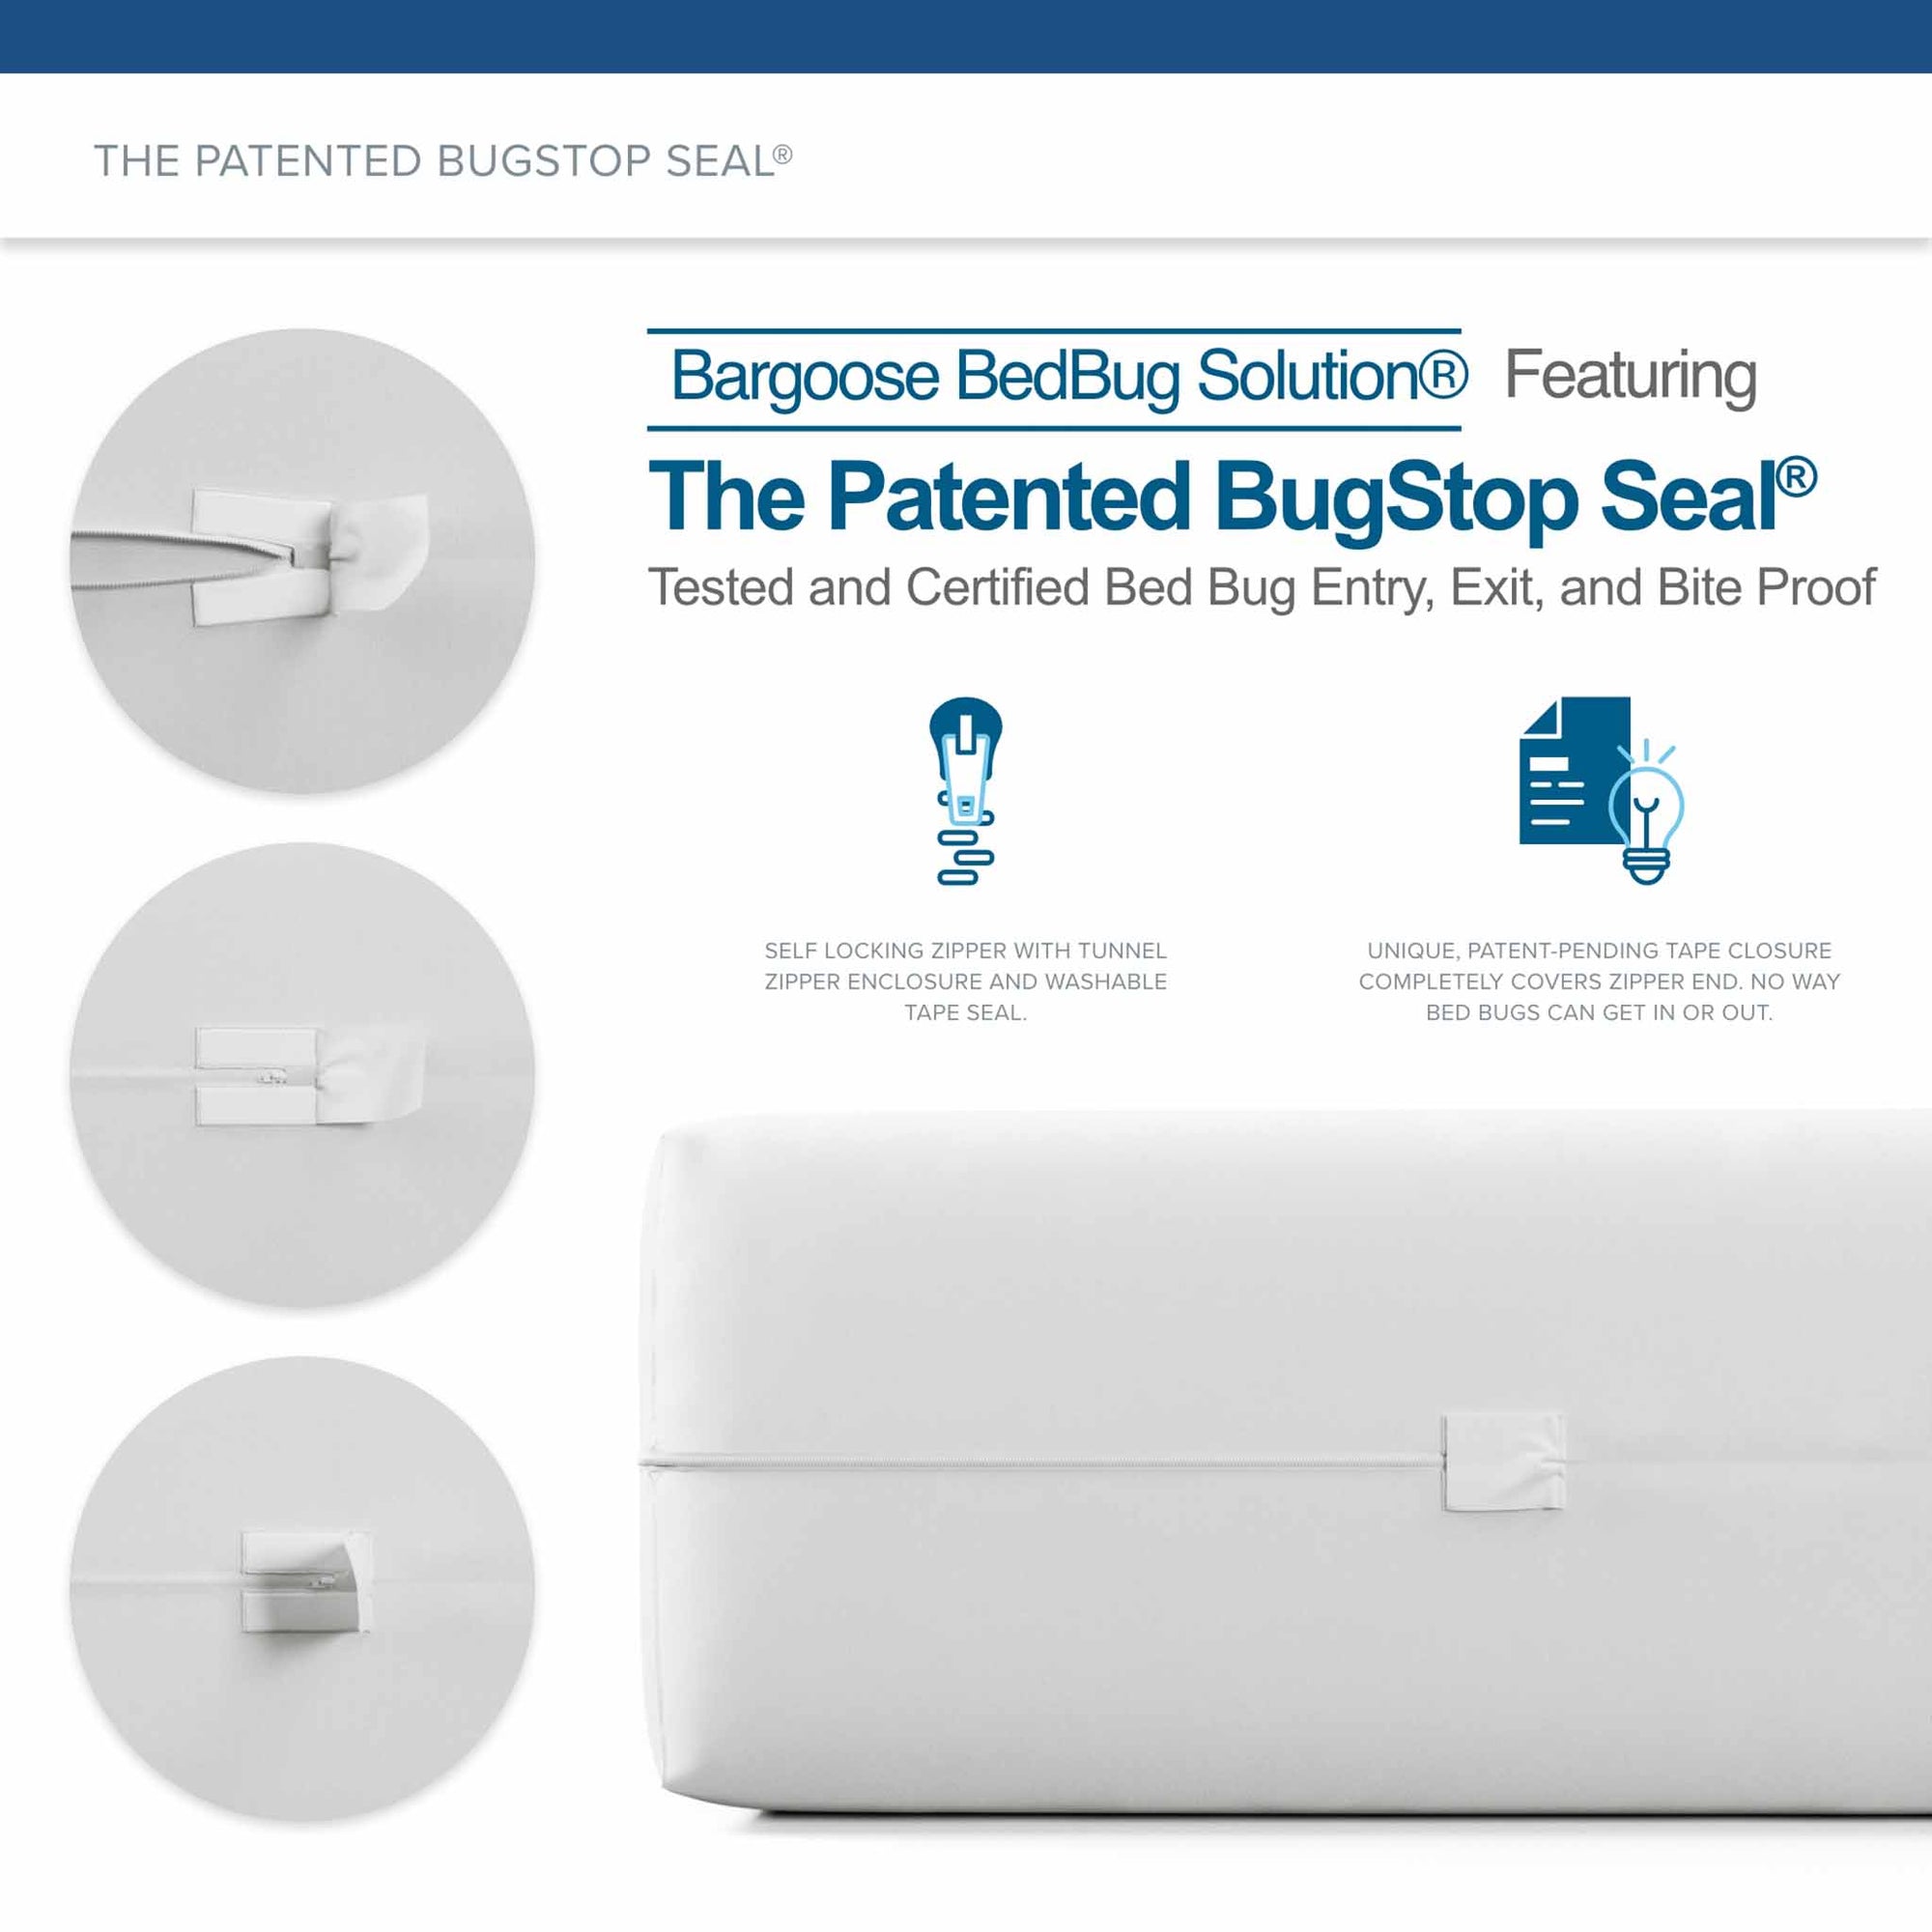 Bedbug Solution® Elite Bed Bug Proof Mattress Encasing